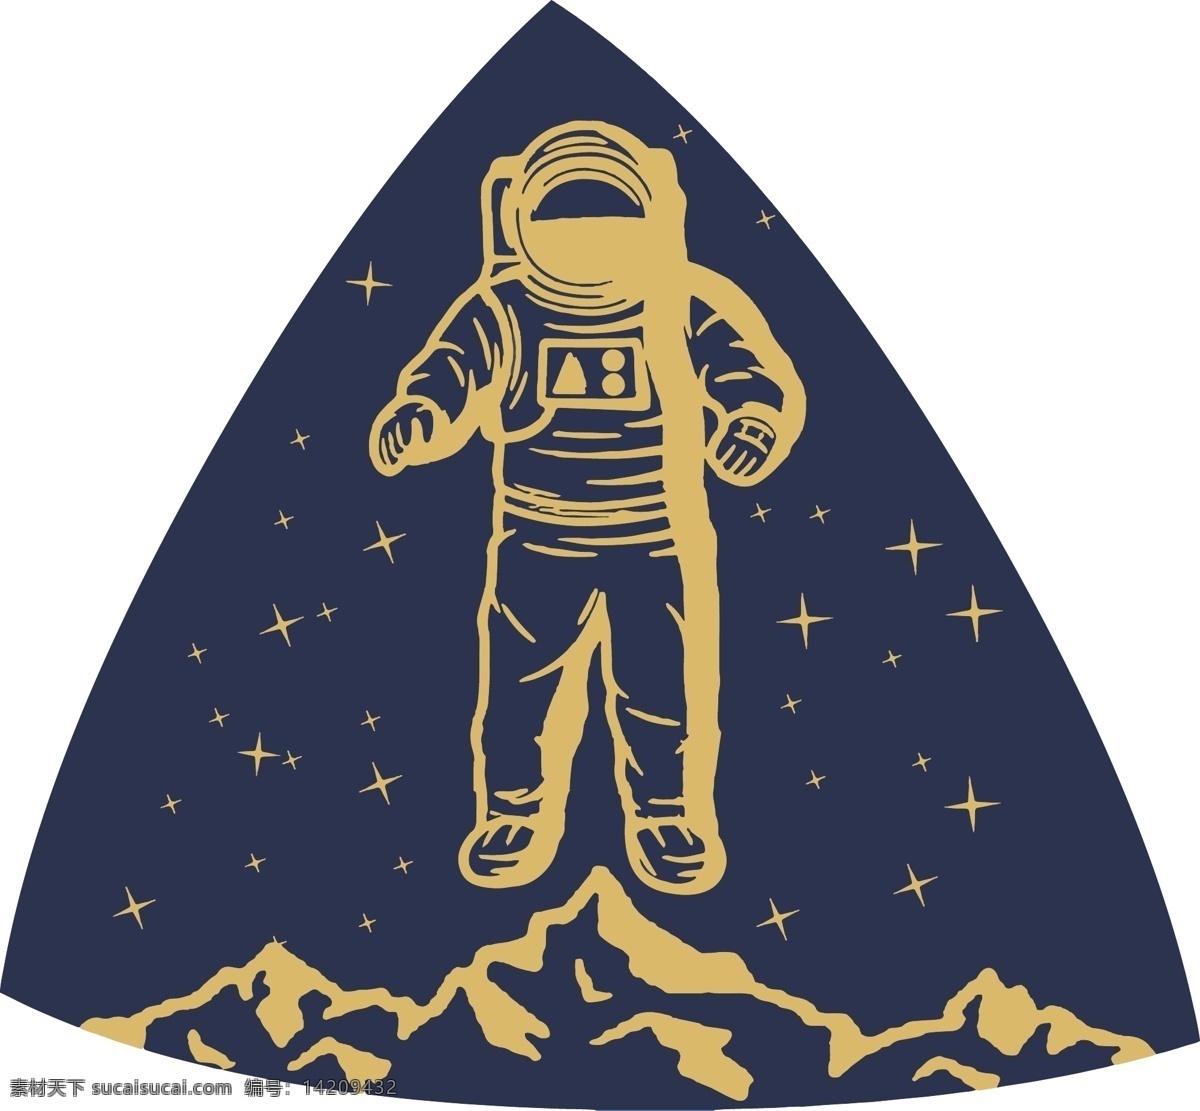 登月的宇航员 宇航员 太空 男人矢量图 登月宇航员 流星 矢量图库 航天计划 标志图标 其他图标